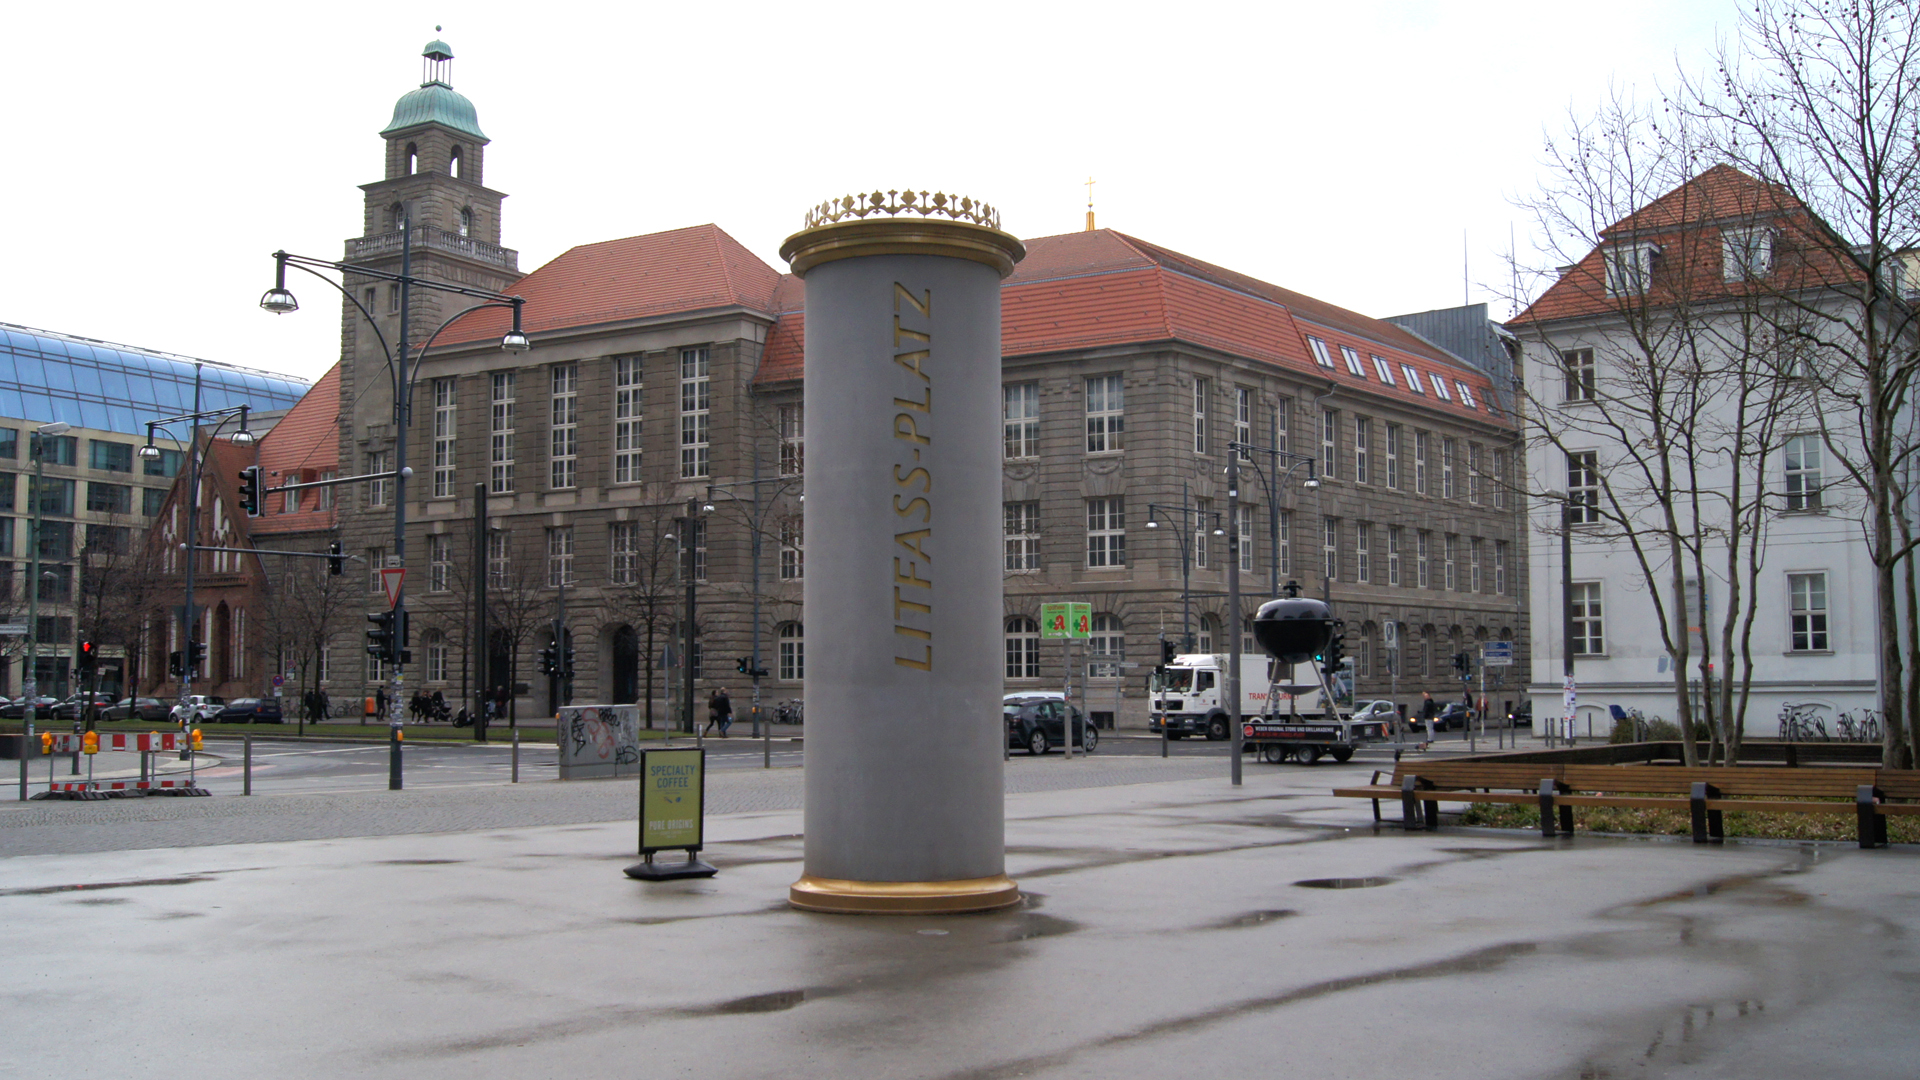 Fotos Deutschland, Berlin 10: Litfaß-Platz mit Litfaß-Säule